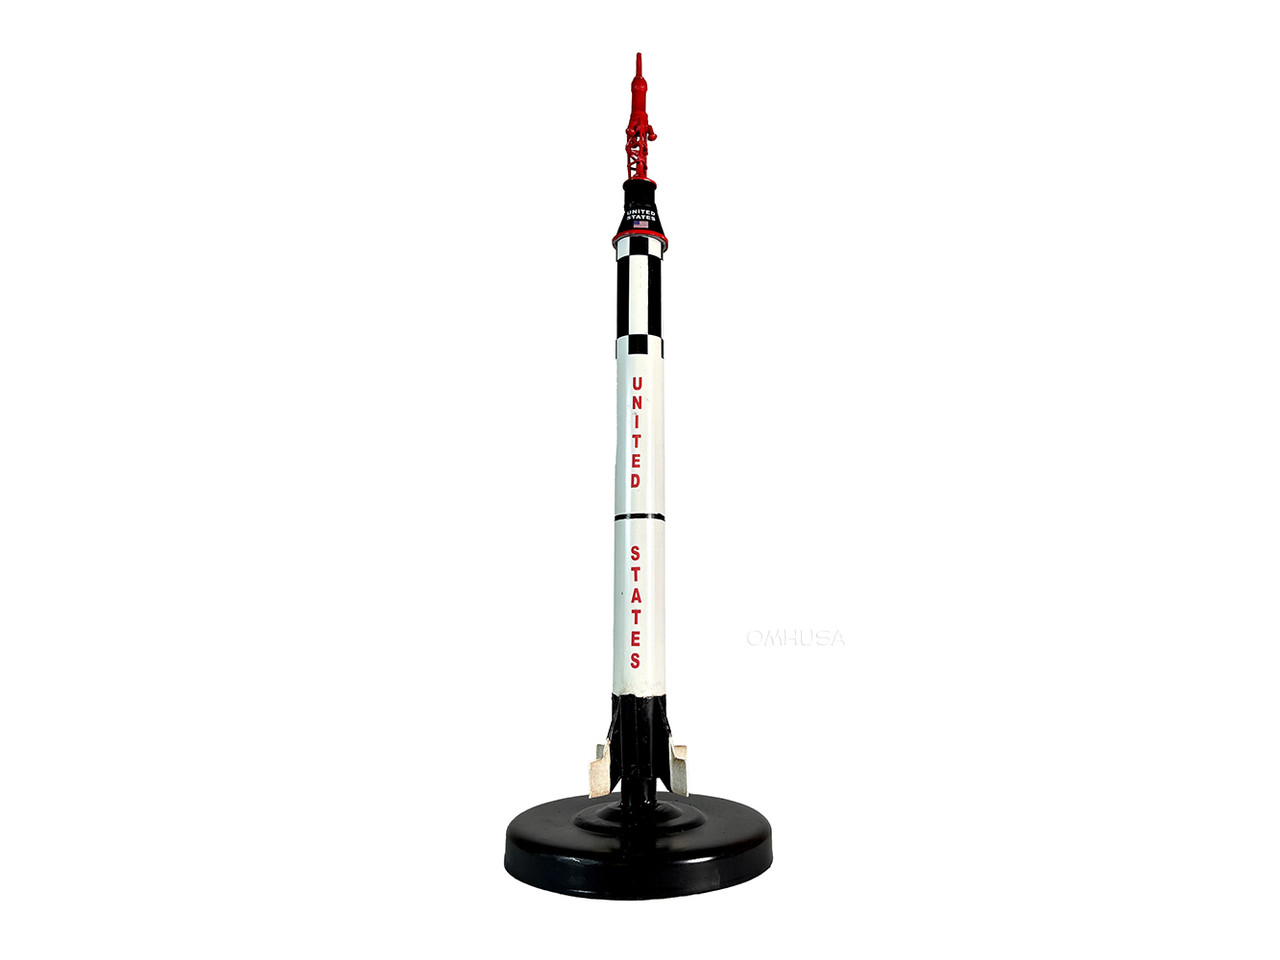 Mercury Redstone Rocket Display Model